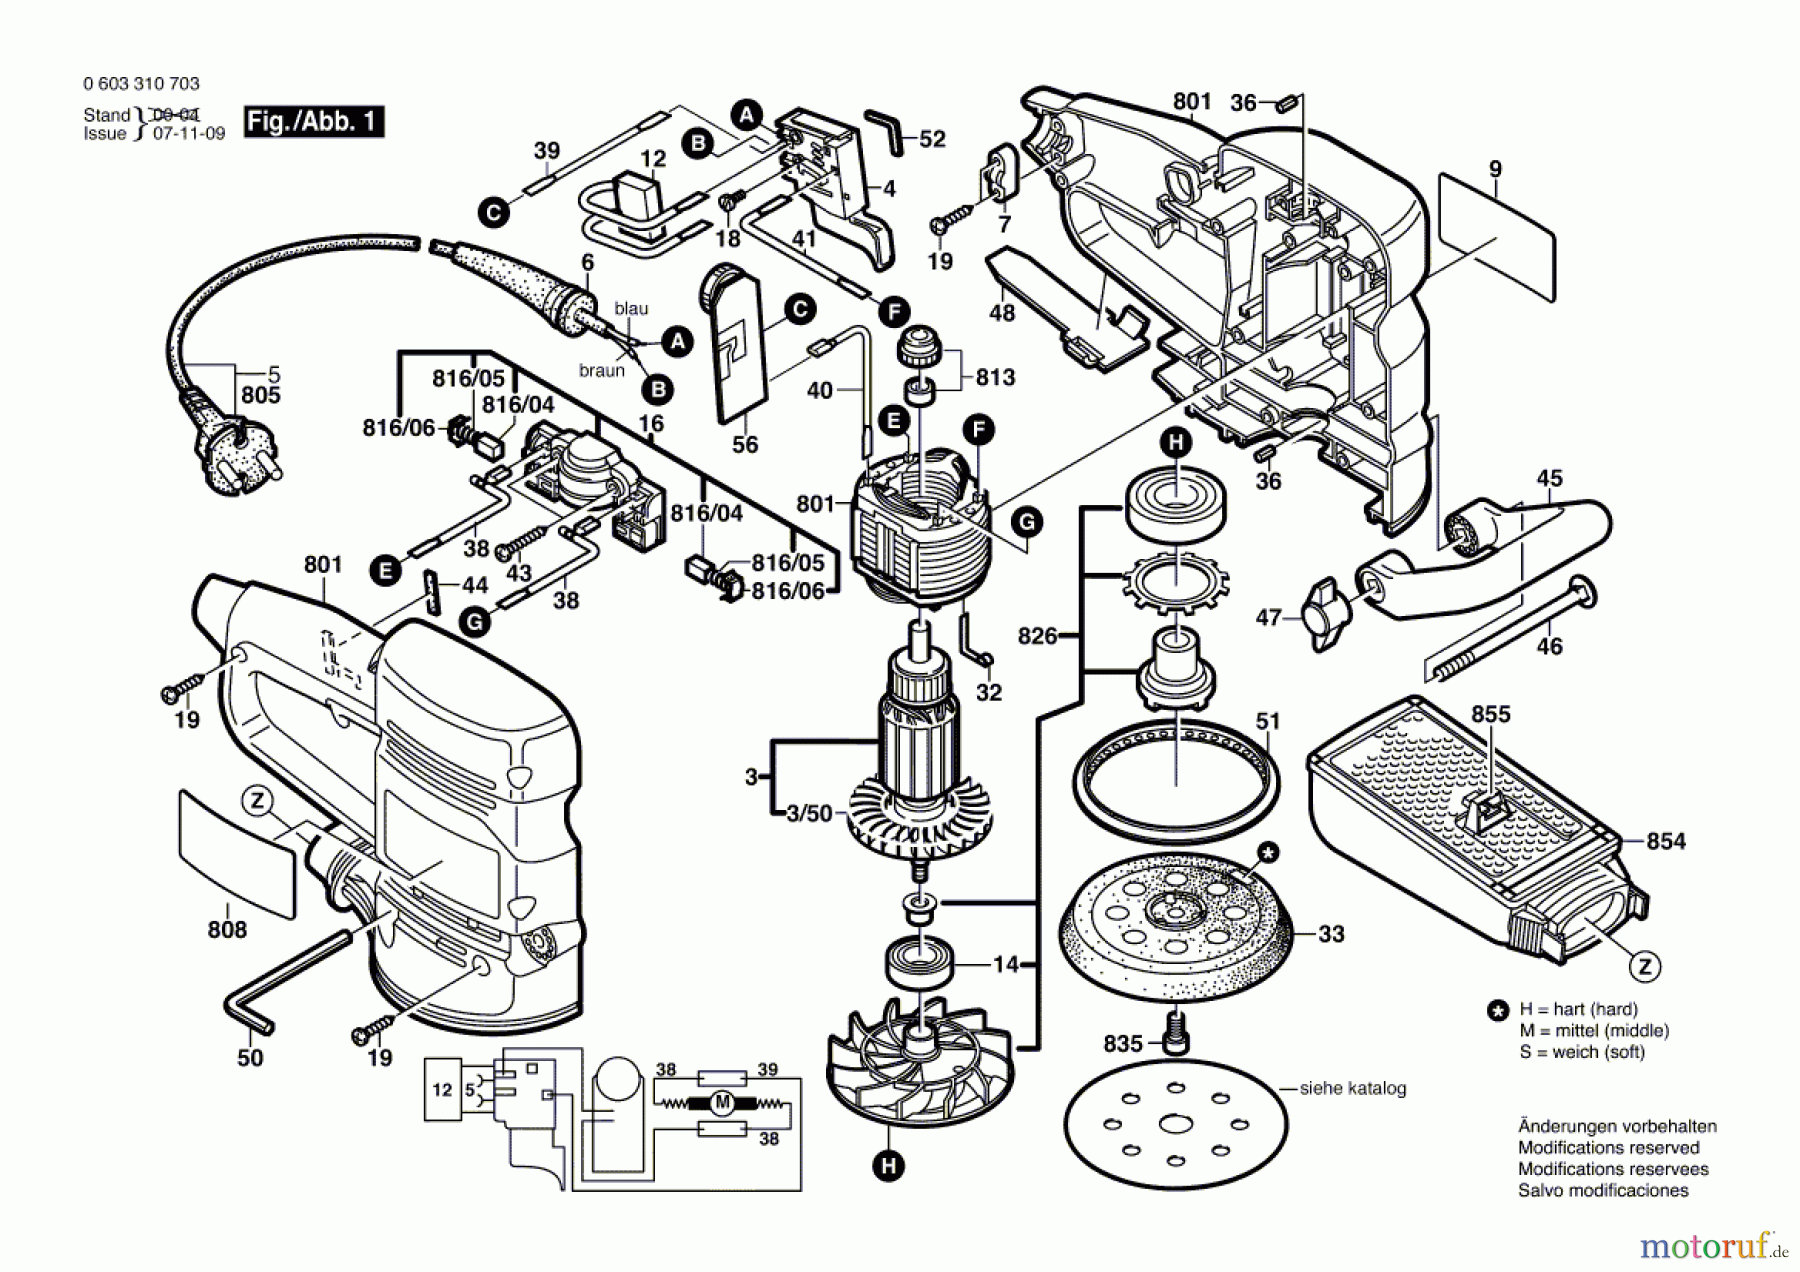  Bosch Werkzeug Exzenterschleifer PEX 12 AE Seite 1